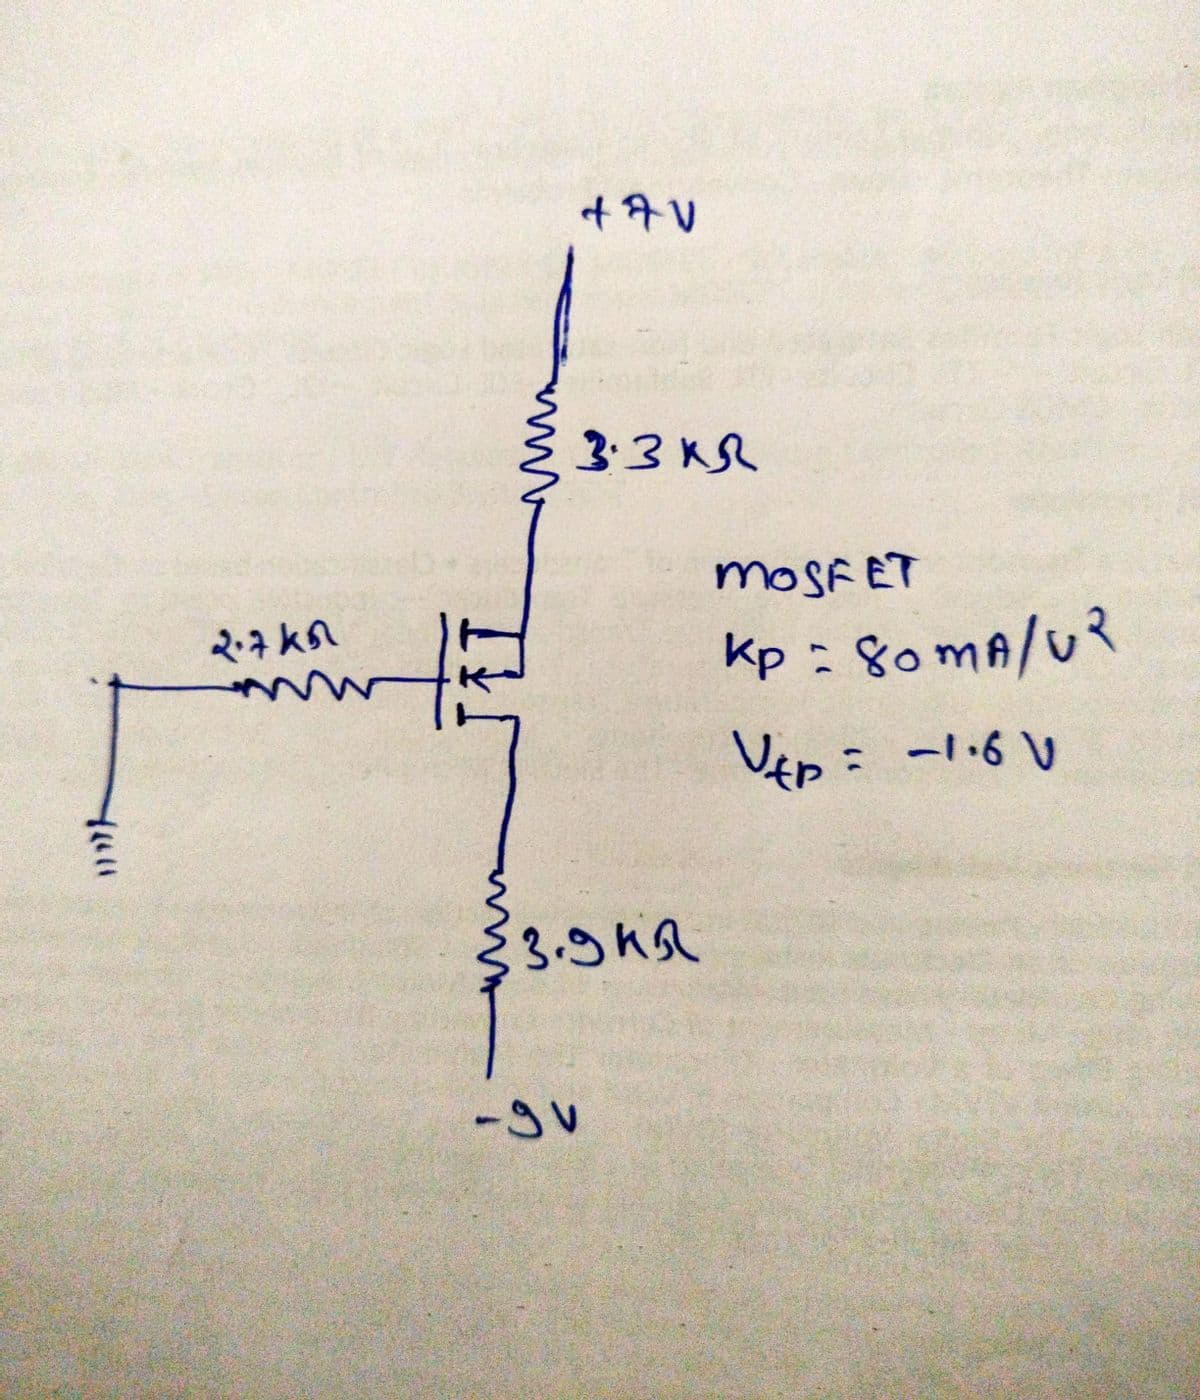 400
2.7kn
N
www
12
+7V
-gv
3.3 KR
дня
MOSFET
Kp = 80mA/UR
Utp = -1.6 V